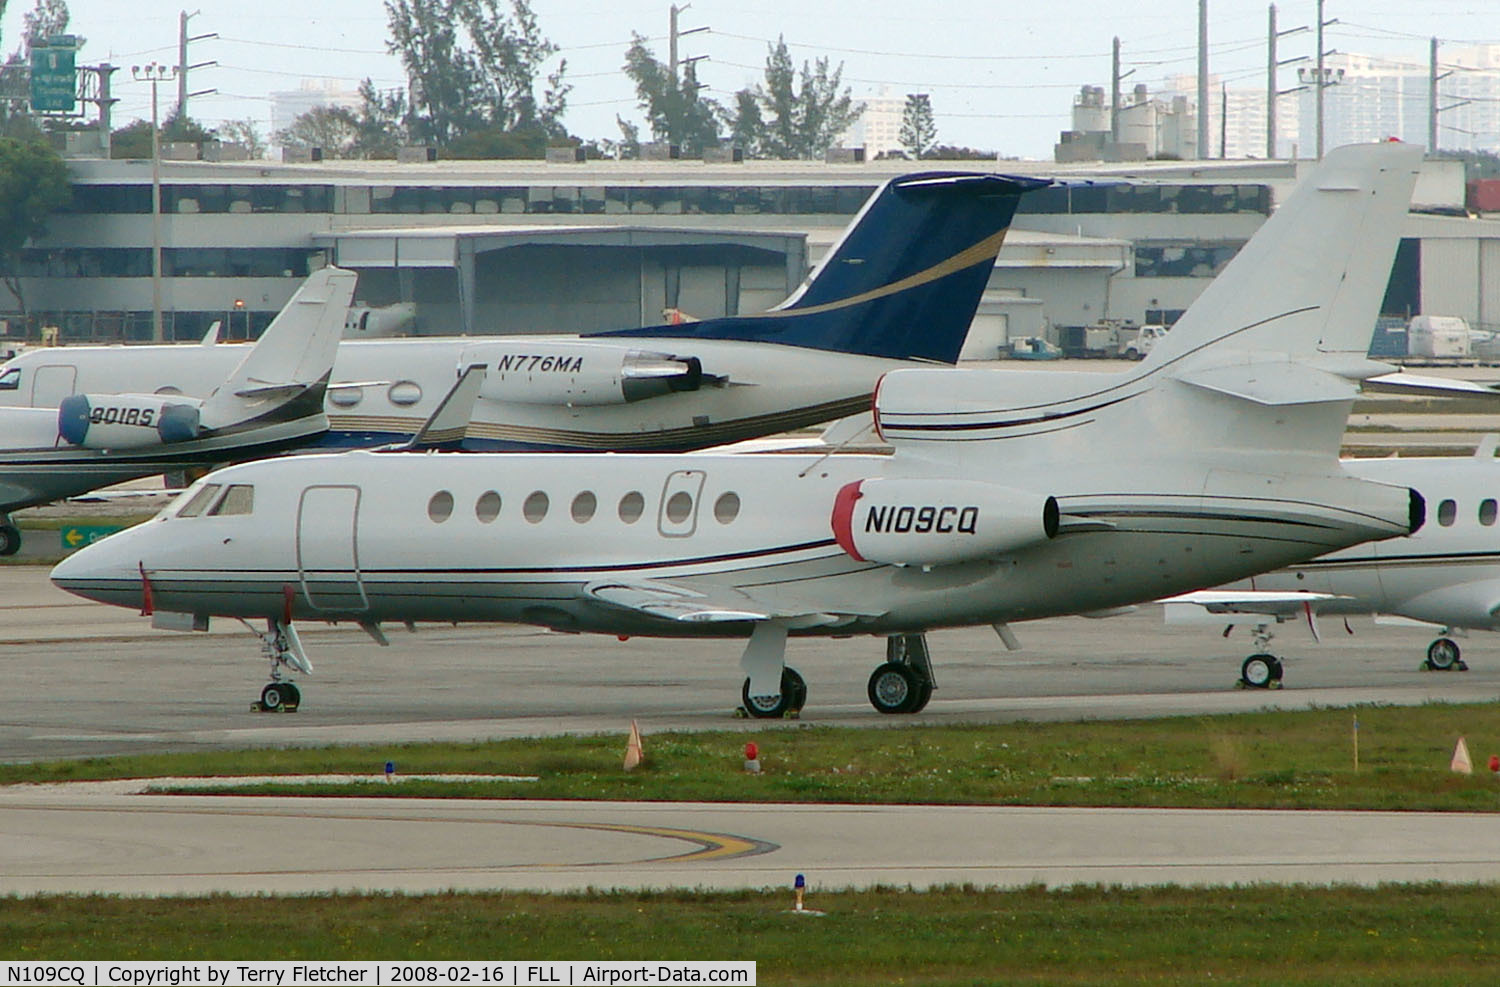 N109CQ, 2004 Dassault Falcon 50 C/N 340, Falcon 50 at FLL in Feb 2008